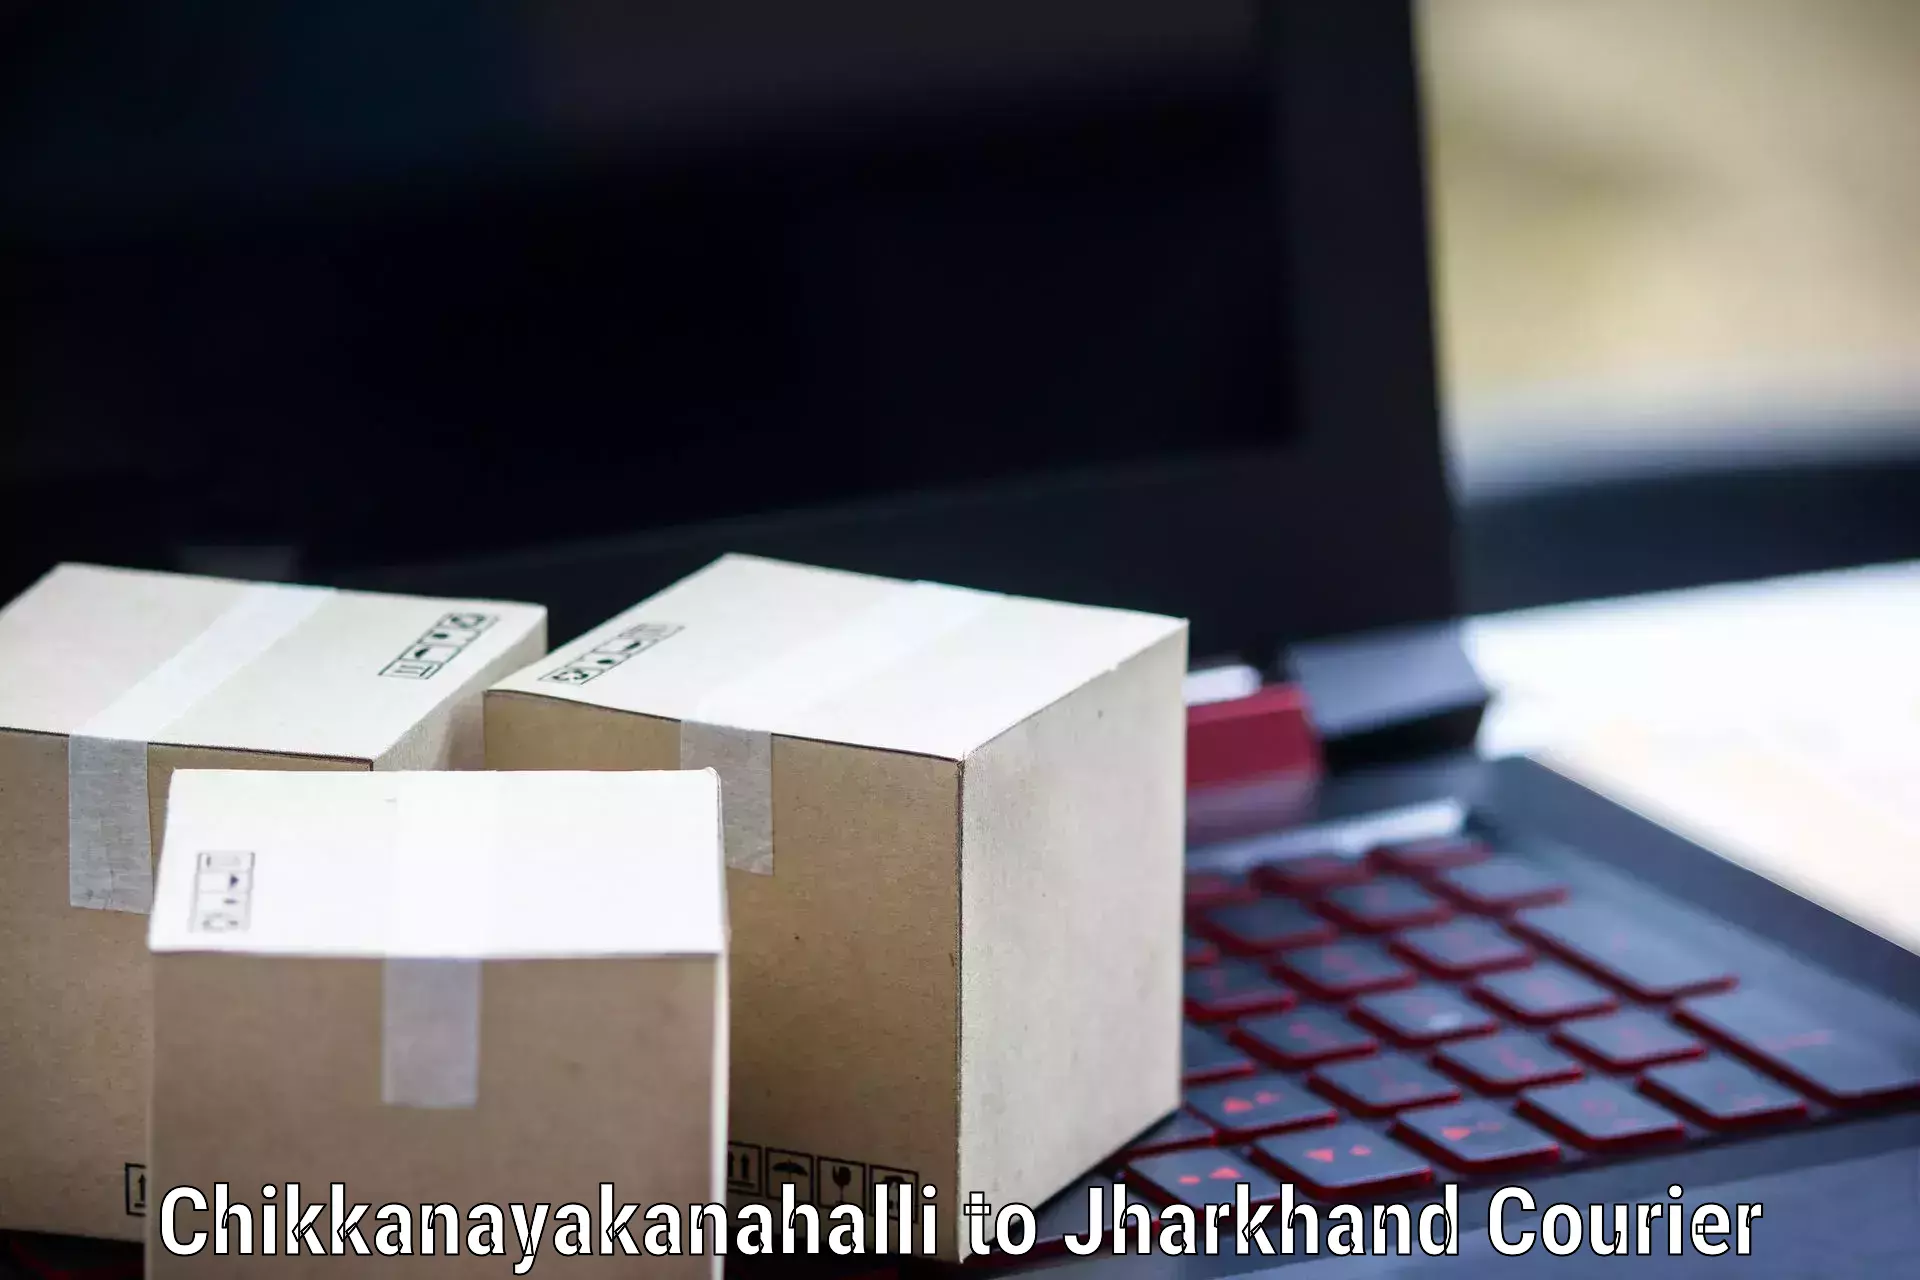 Logistics service provider Chikkanayakanahalli to Padma Hazaribagh